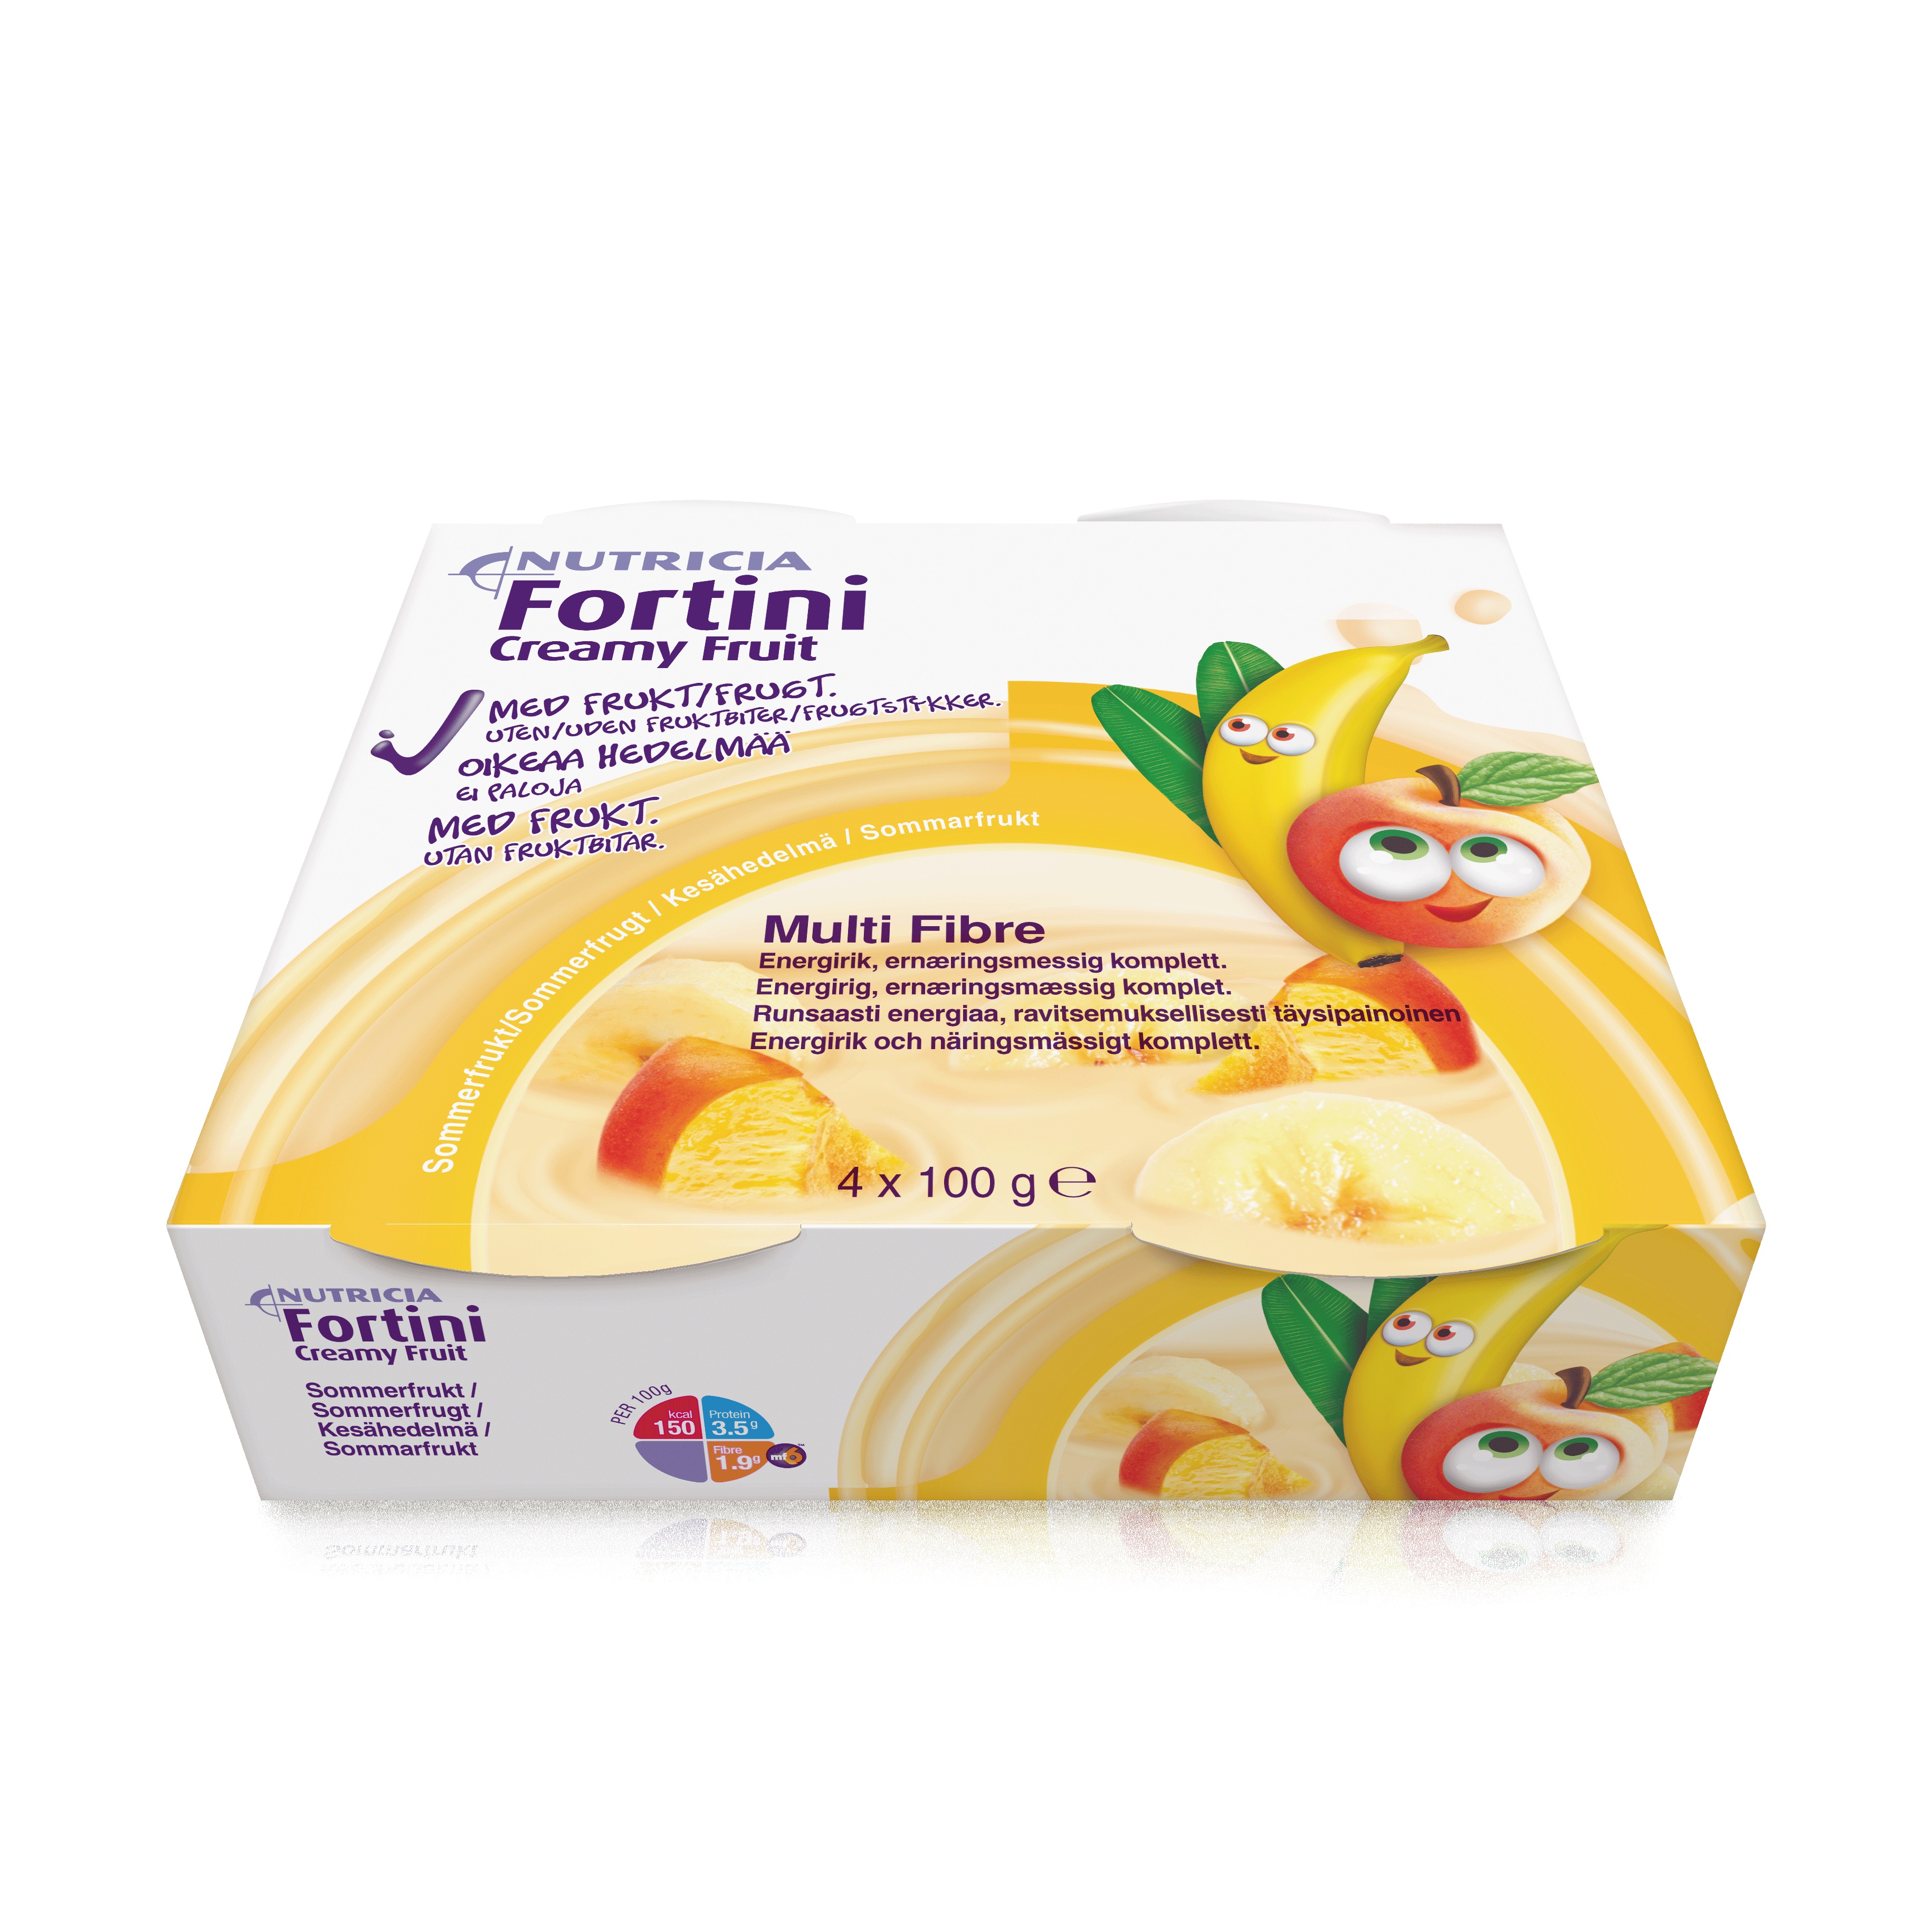 Fortini Creamy Fruit, Sommerfrukt, 4 x 100 ml